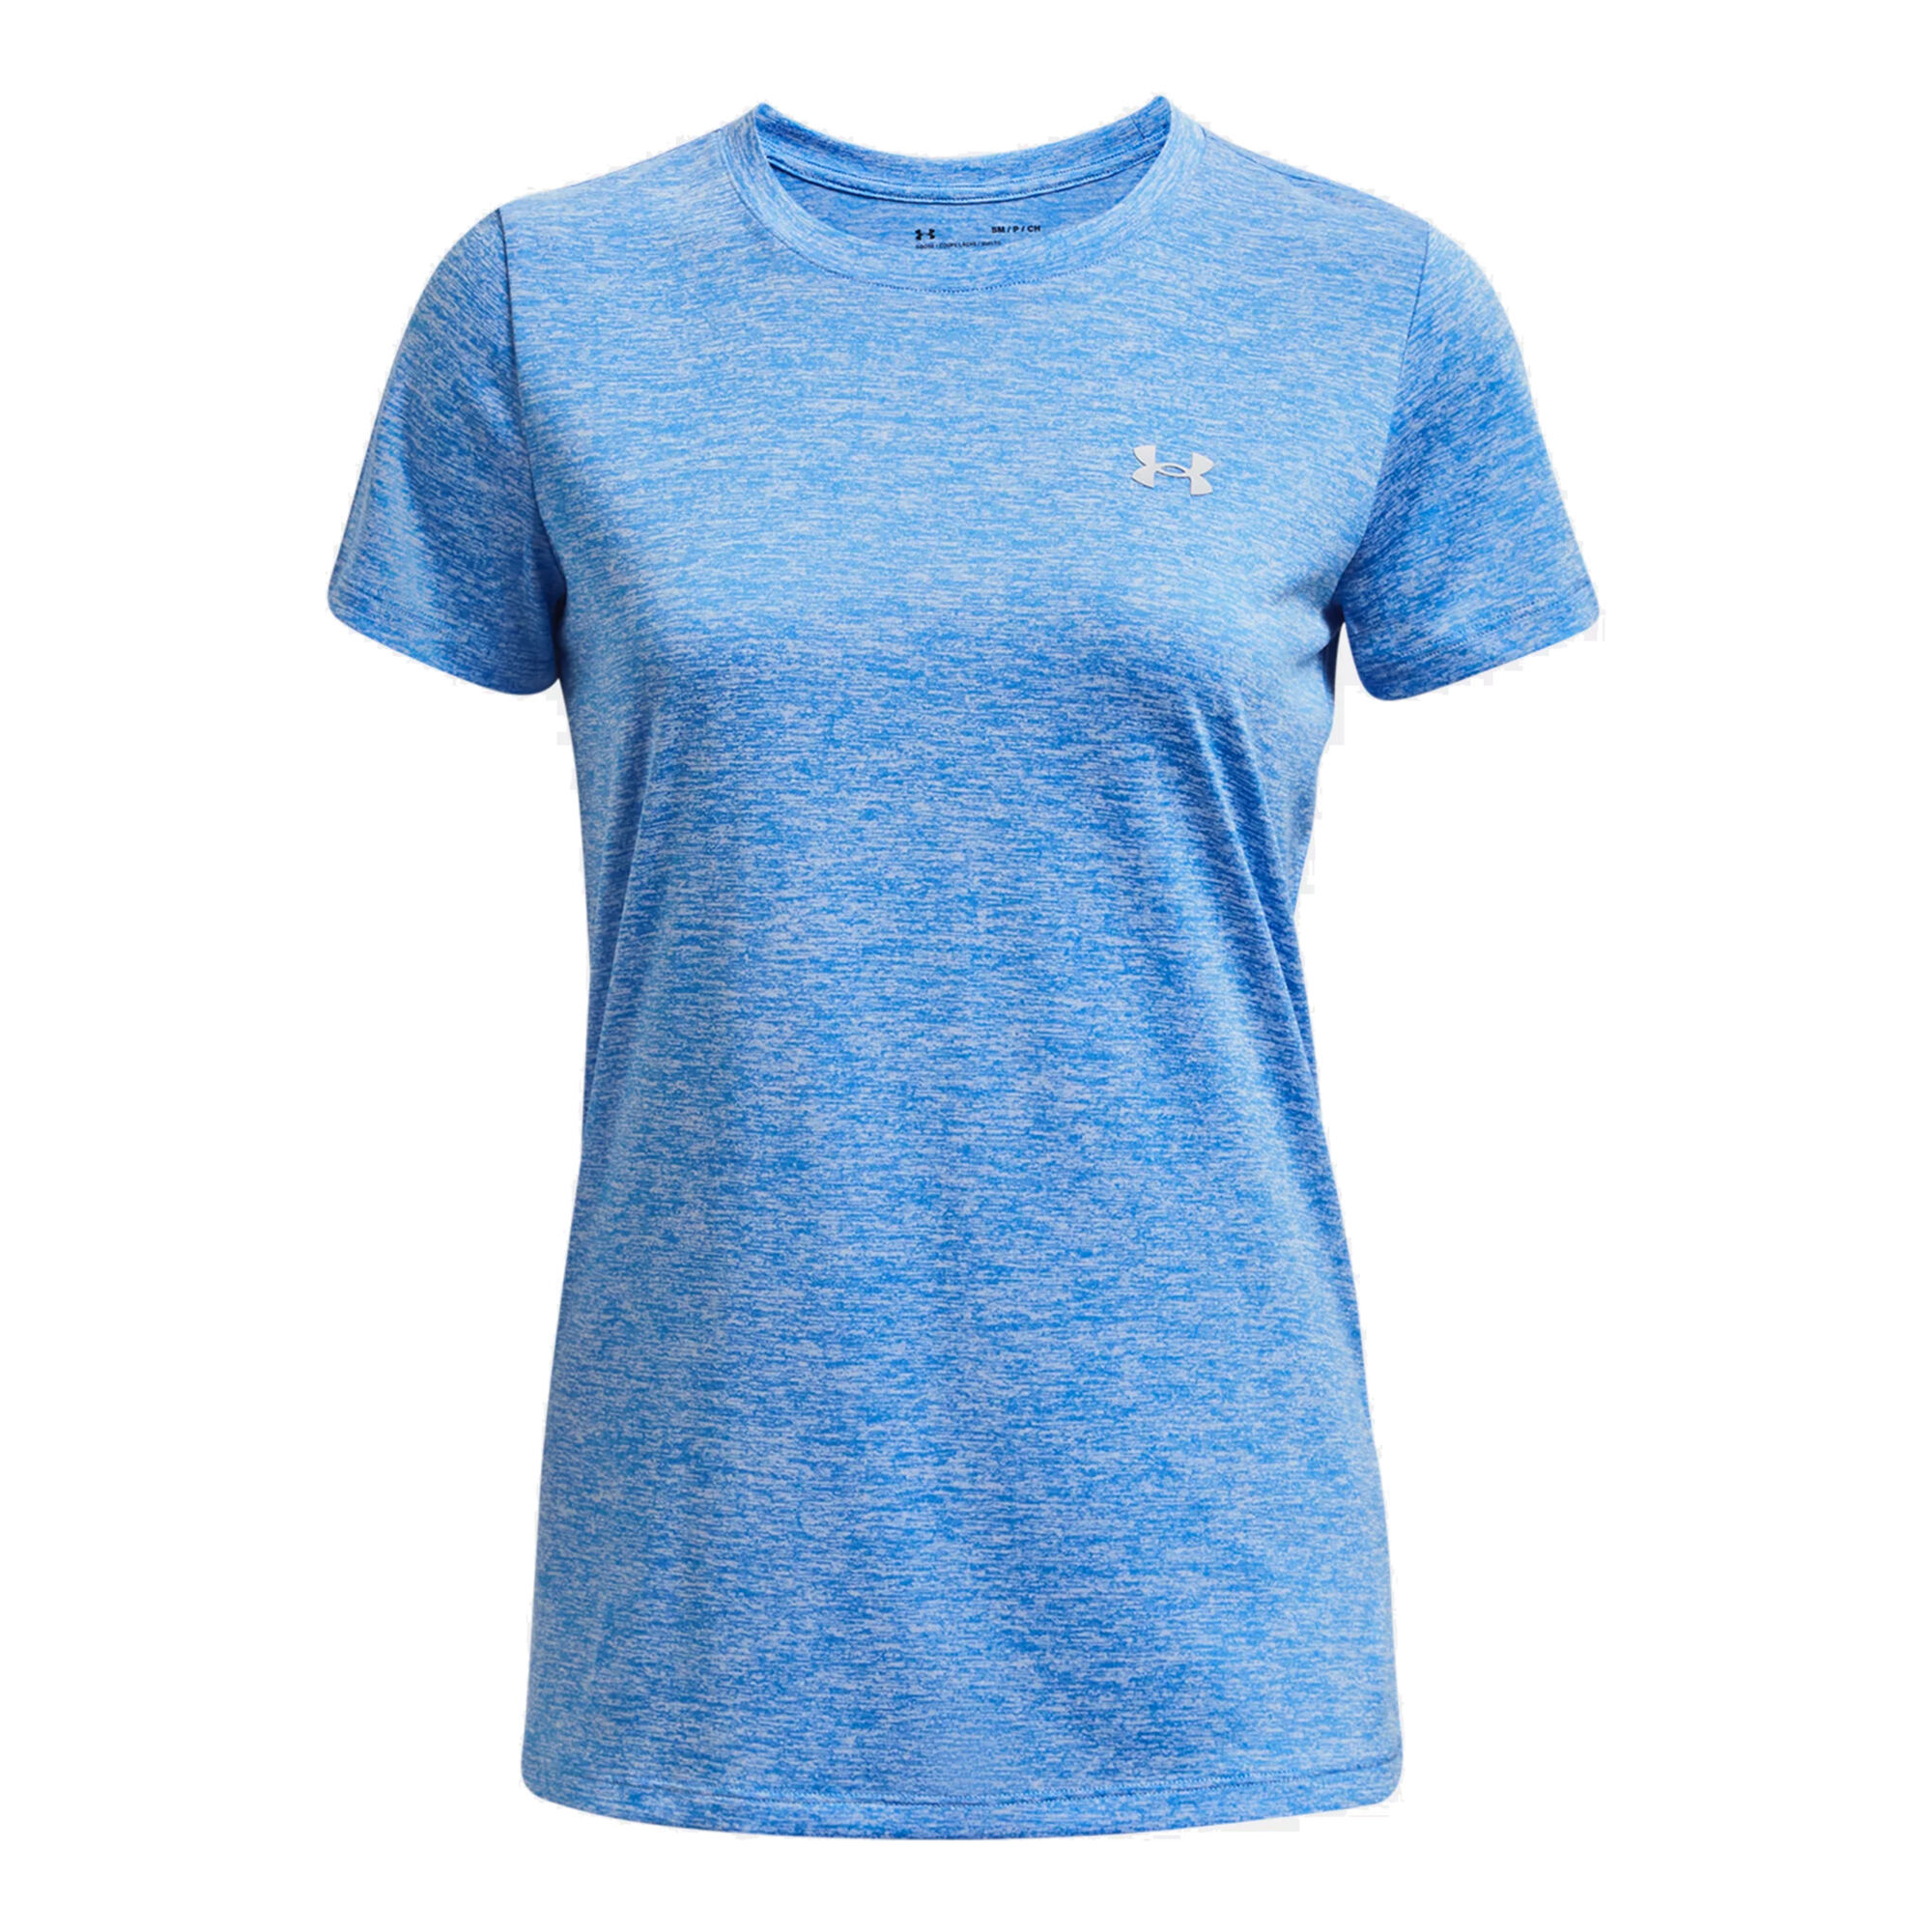 Buy Under Armour Tech Twist T-Shirt Women Blue online